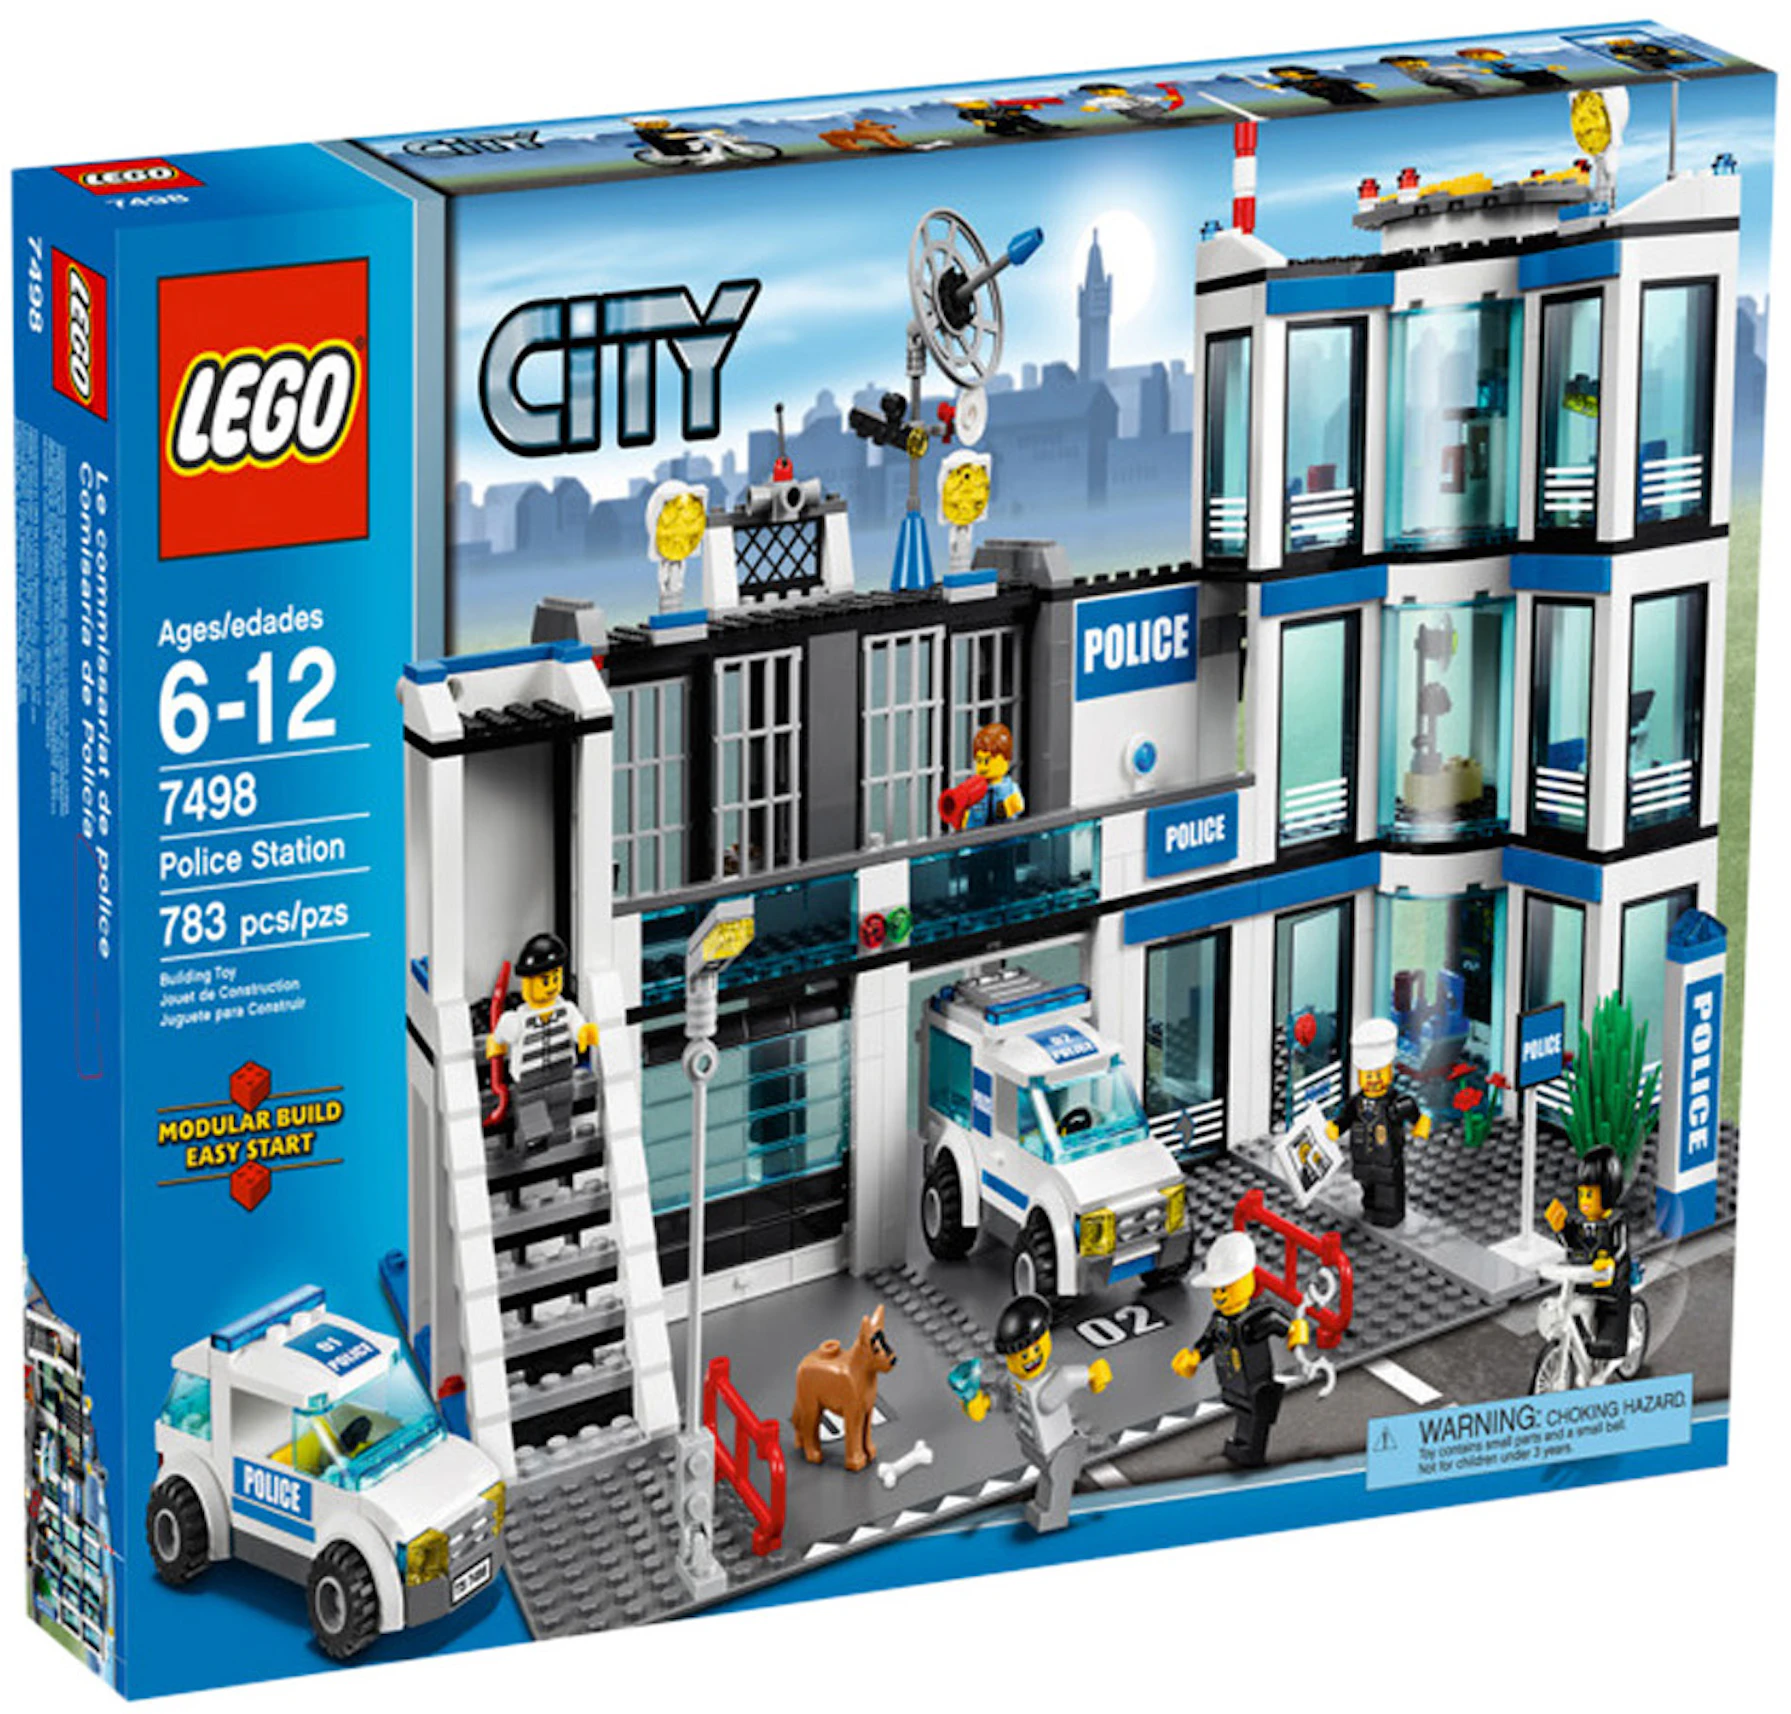 LEGO Station Set 7498 - US